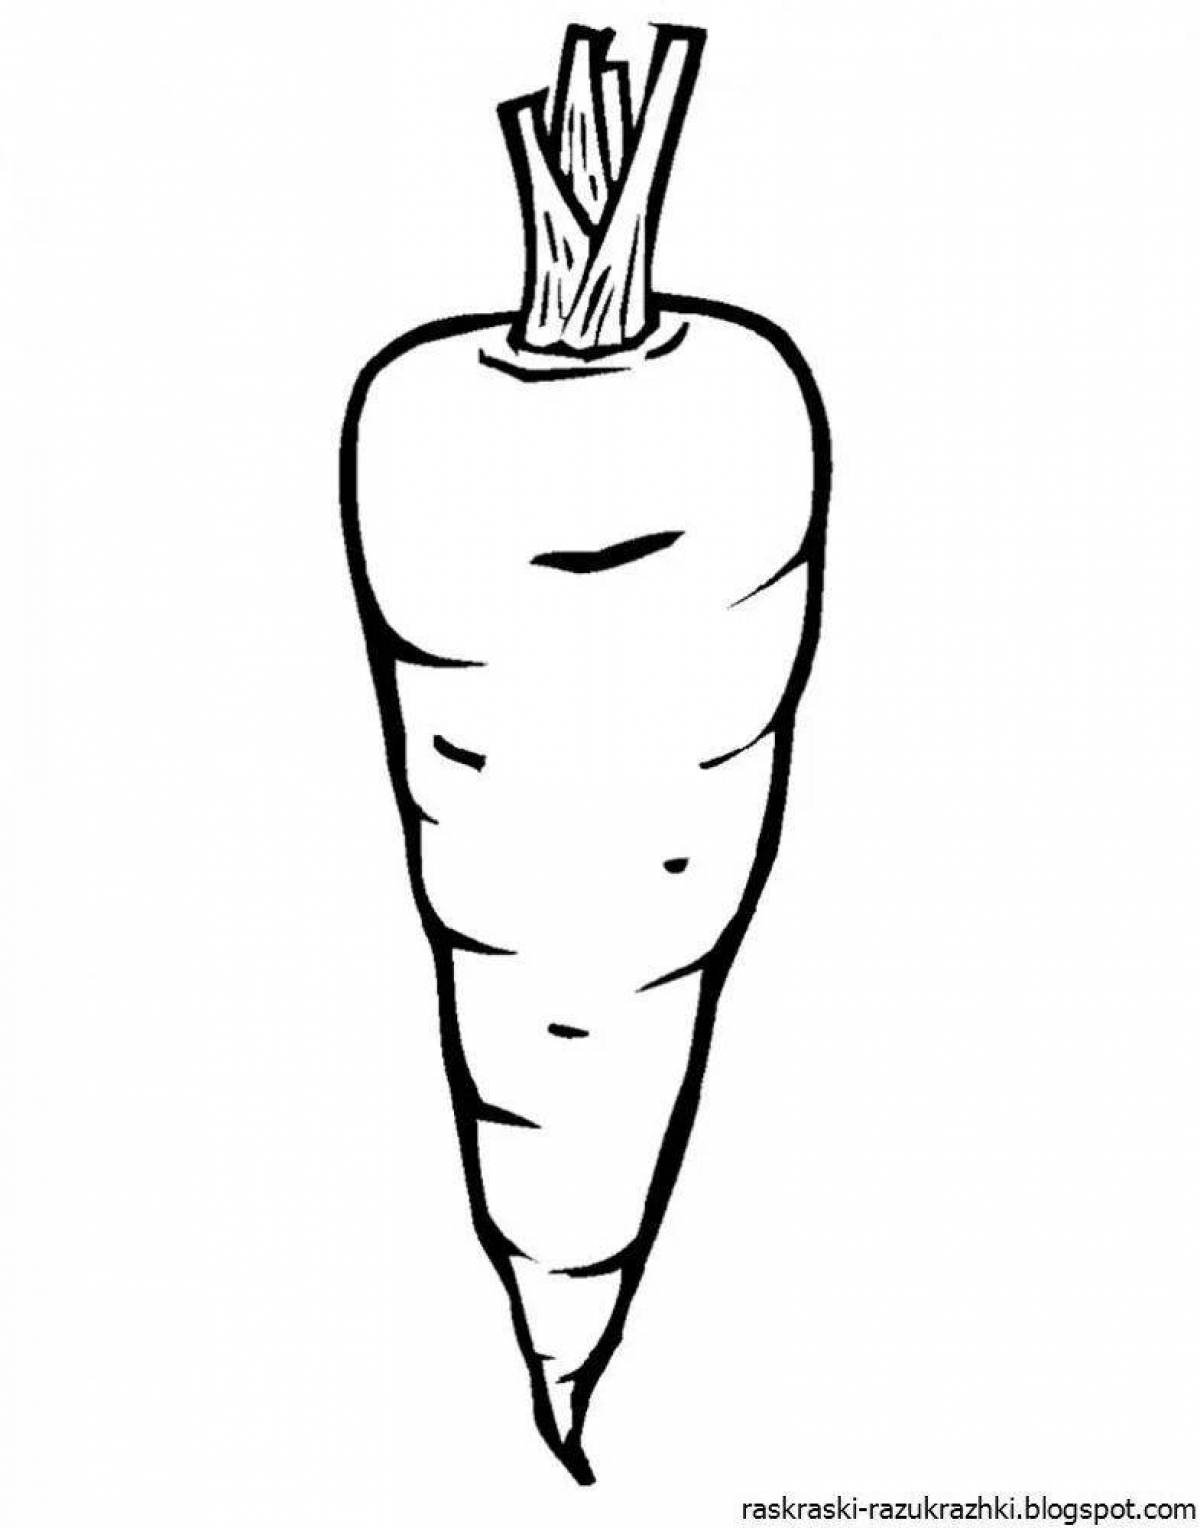 Иллюстрация обильной моркови